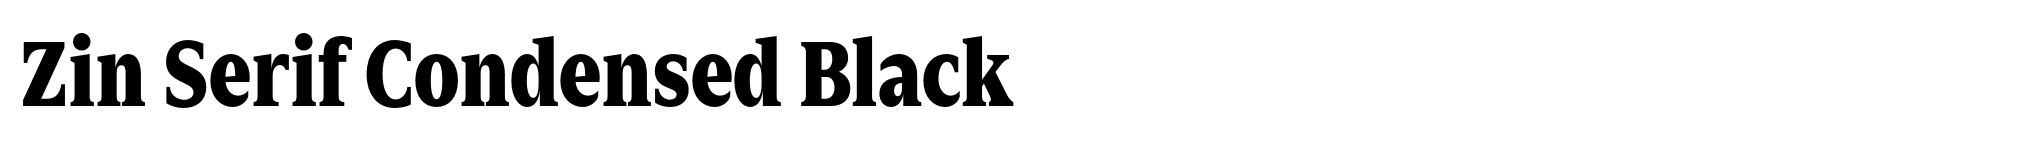 Zin Serif Condensed Black image